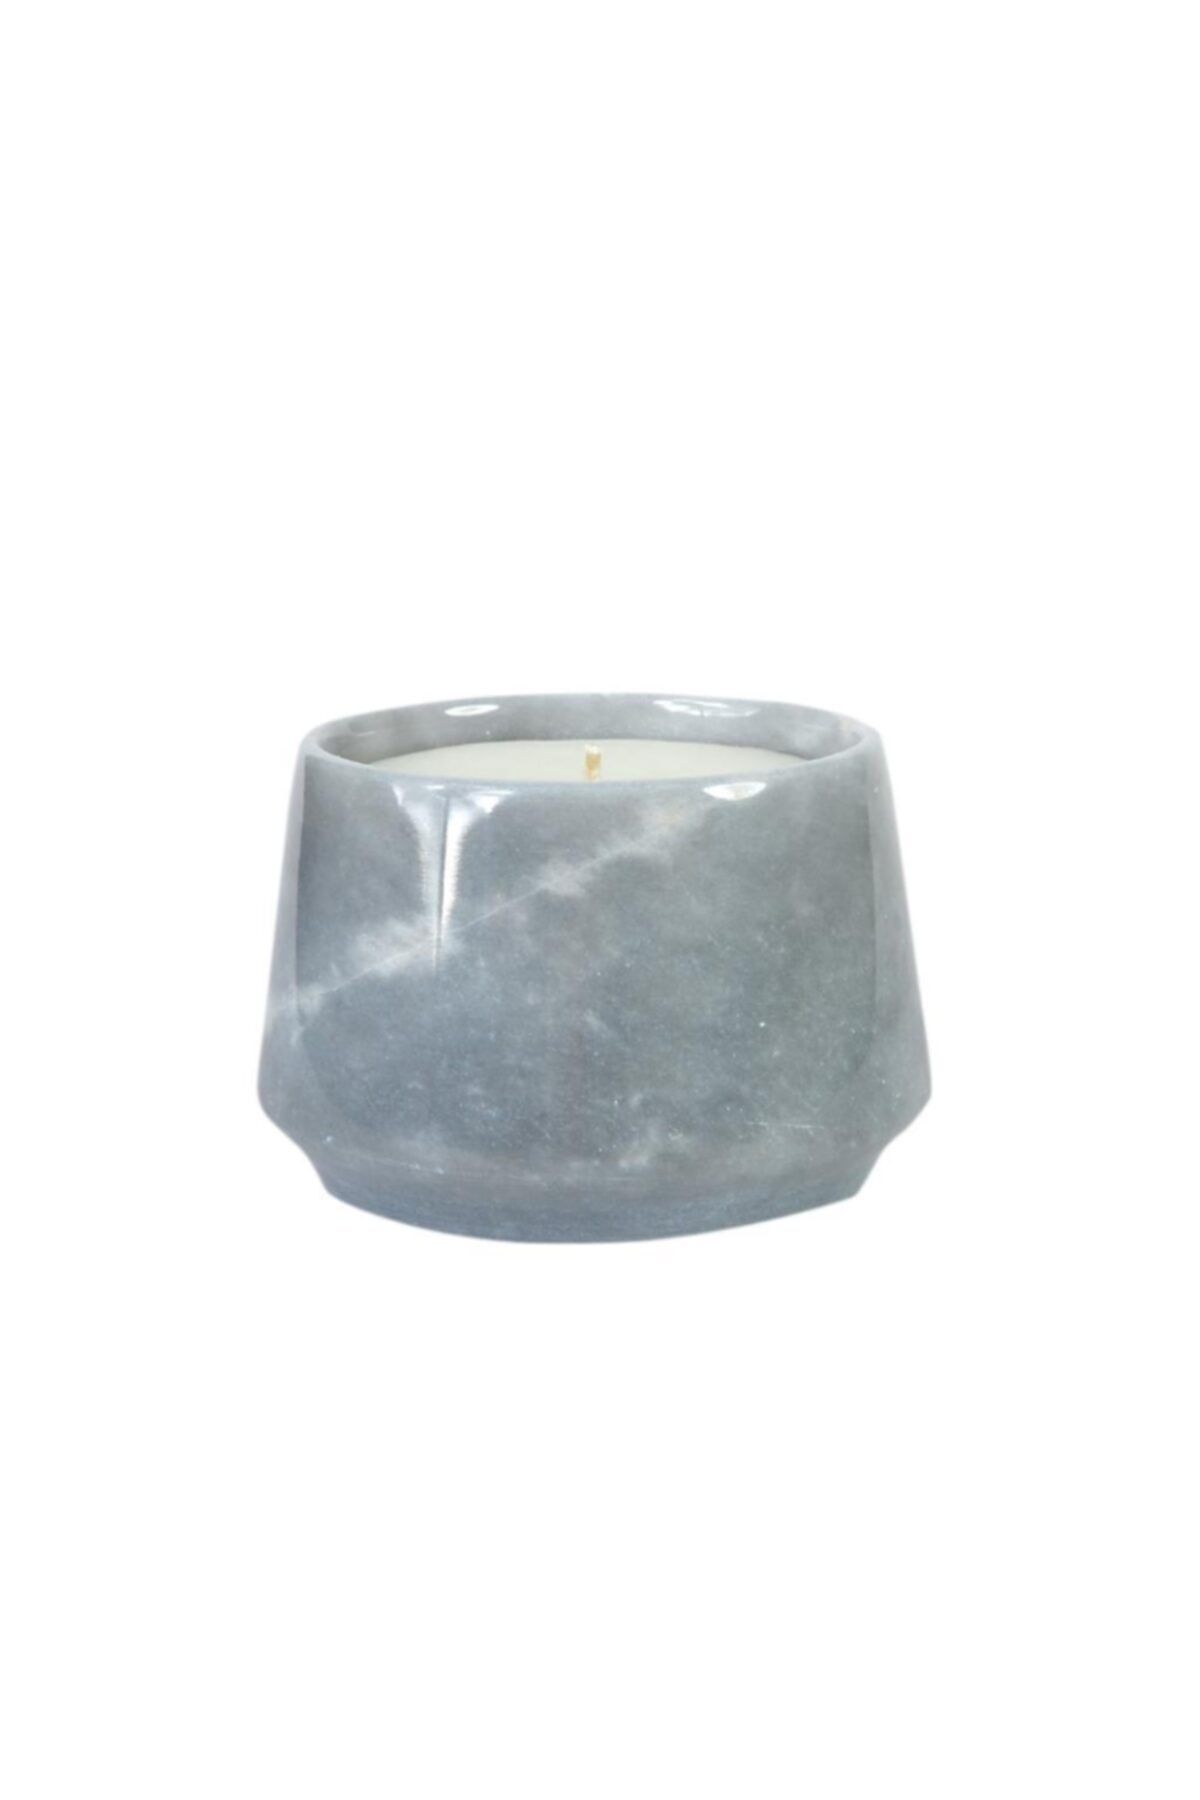 THE GROOVE Marble Cup - 2392 - Elisa - Gri - 10 X 8 Cm Dekora